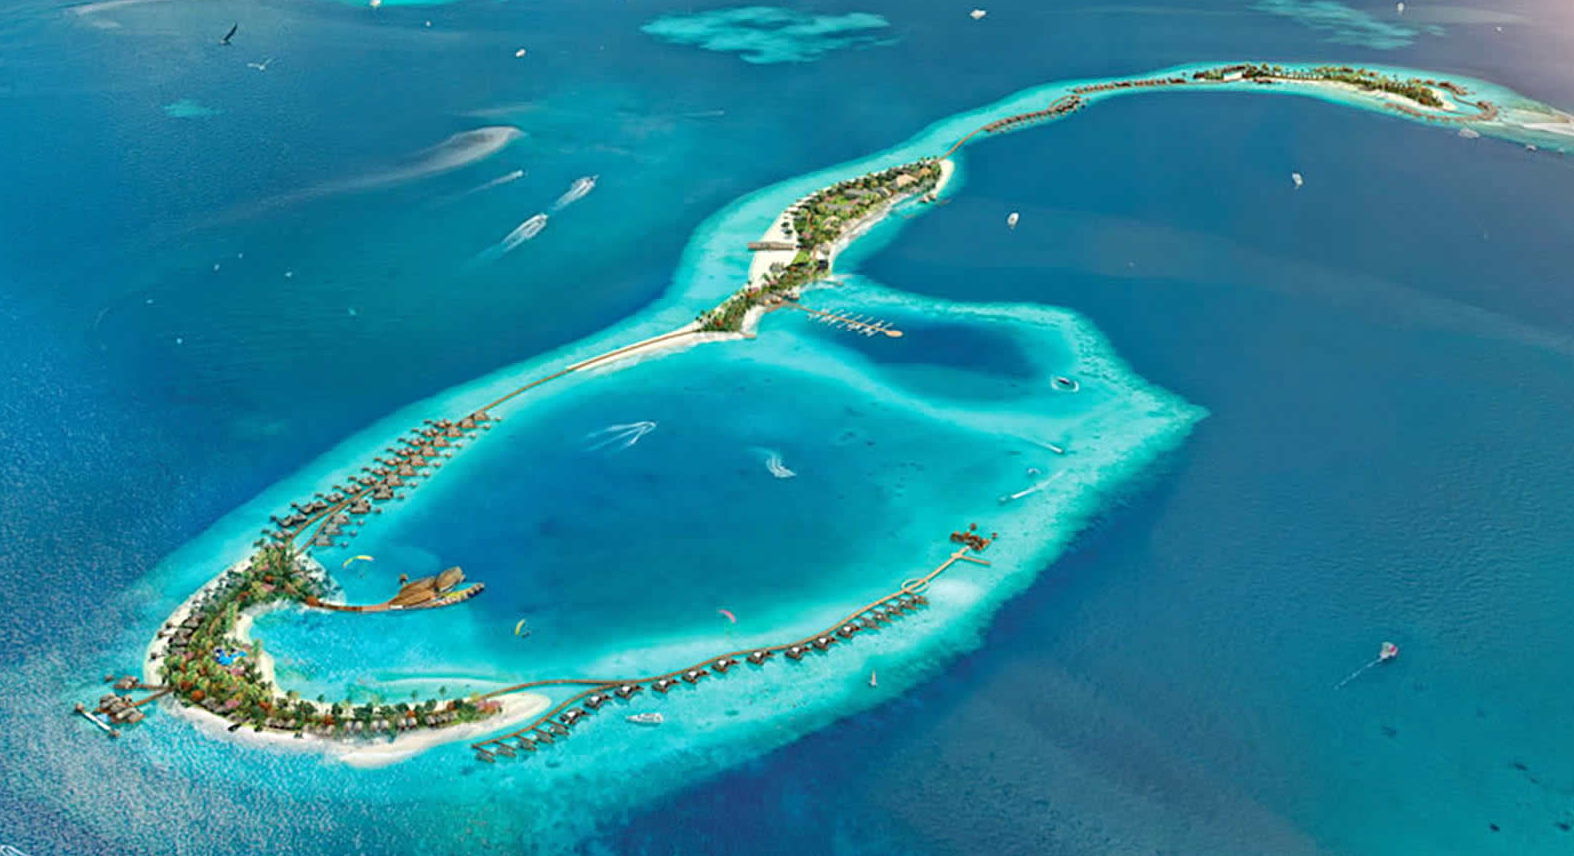  华尔道夫.伊塔富士岛|希尔顿 Waldorf Astoria Maldives Ithaafushi 鸟瞰地图birdview map清晰版 马尔代夫